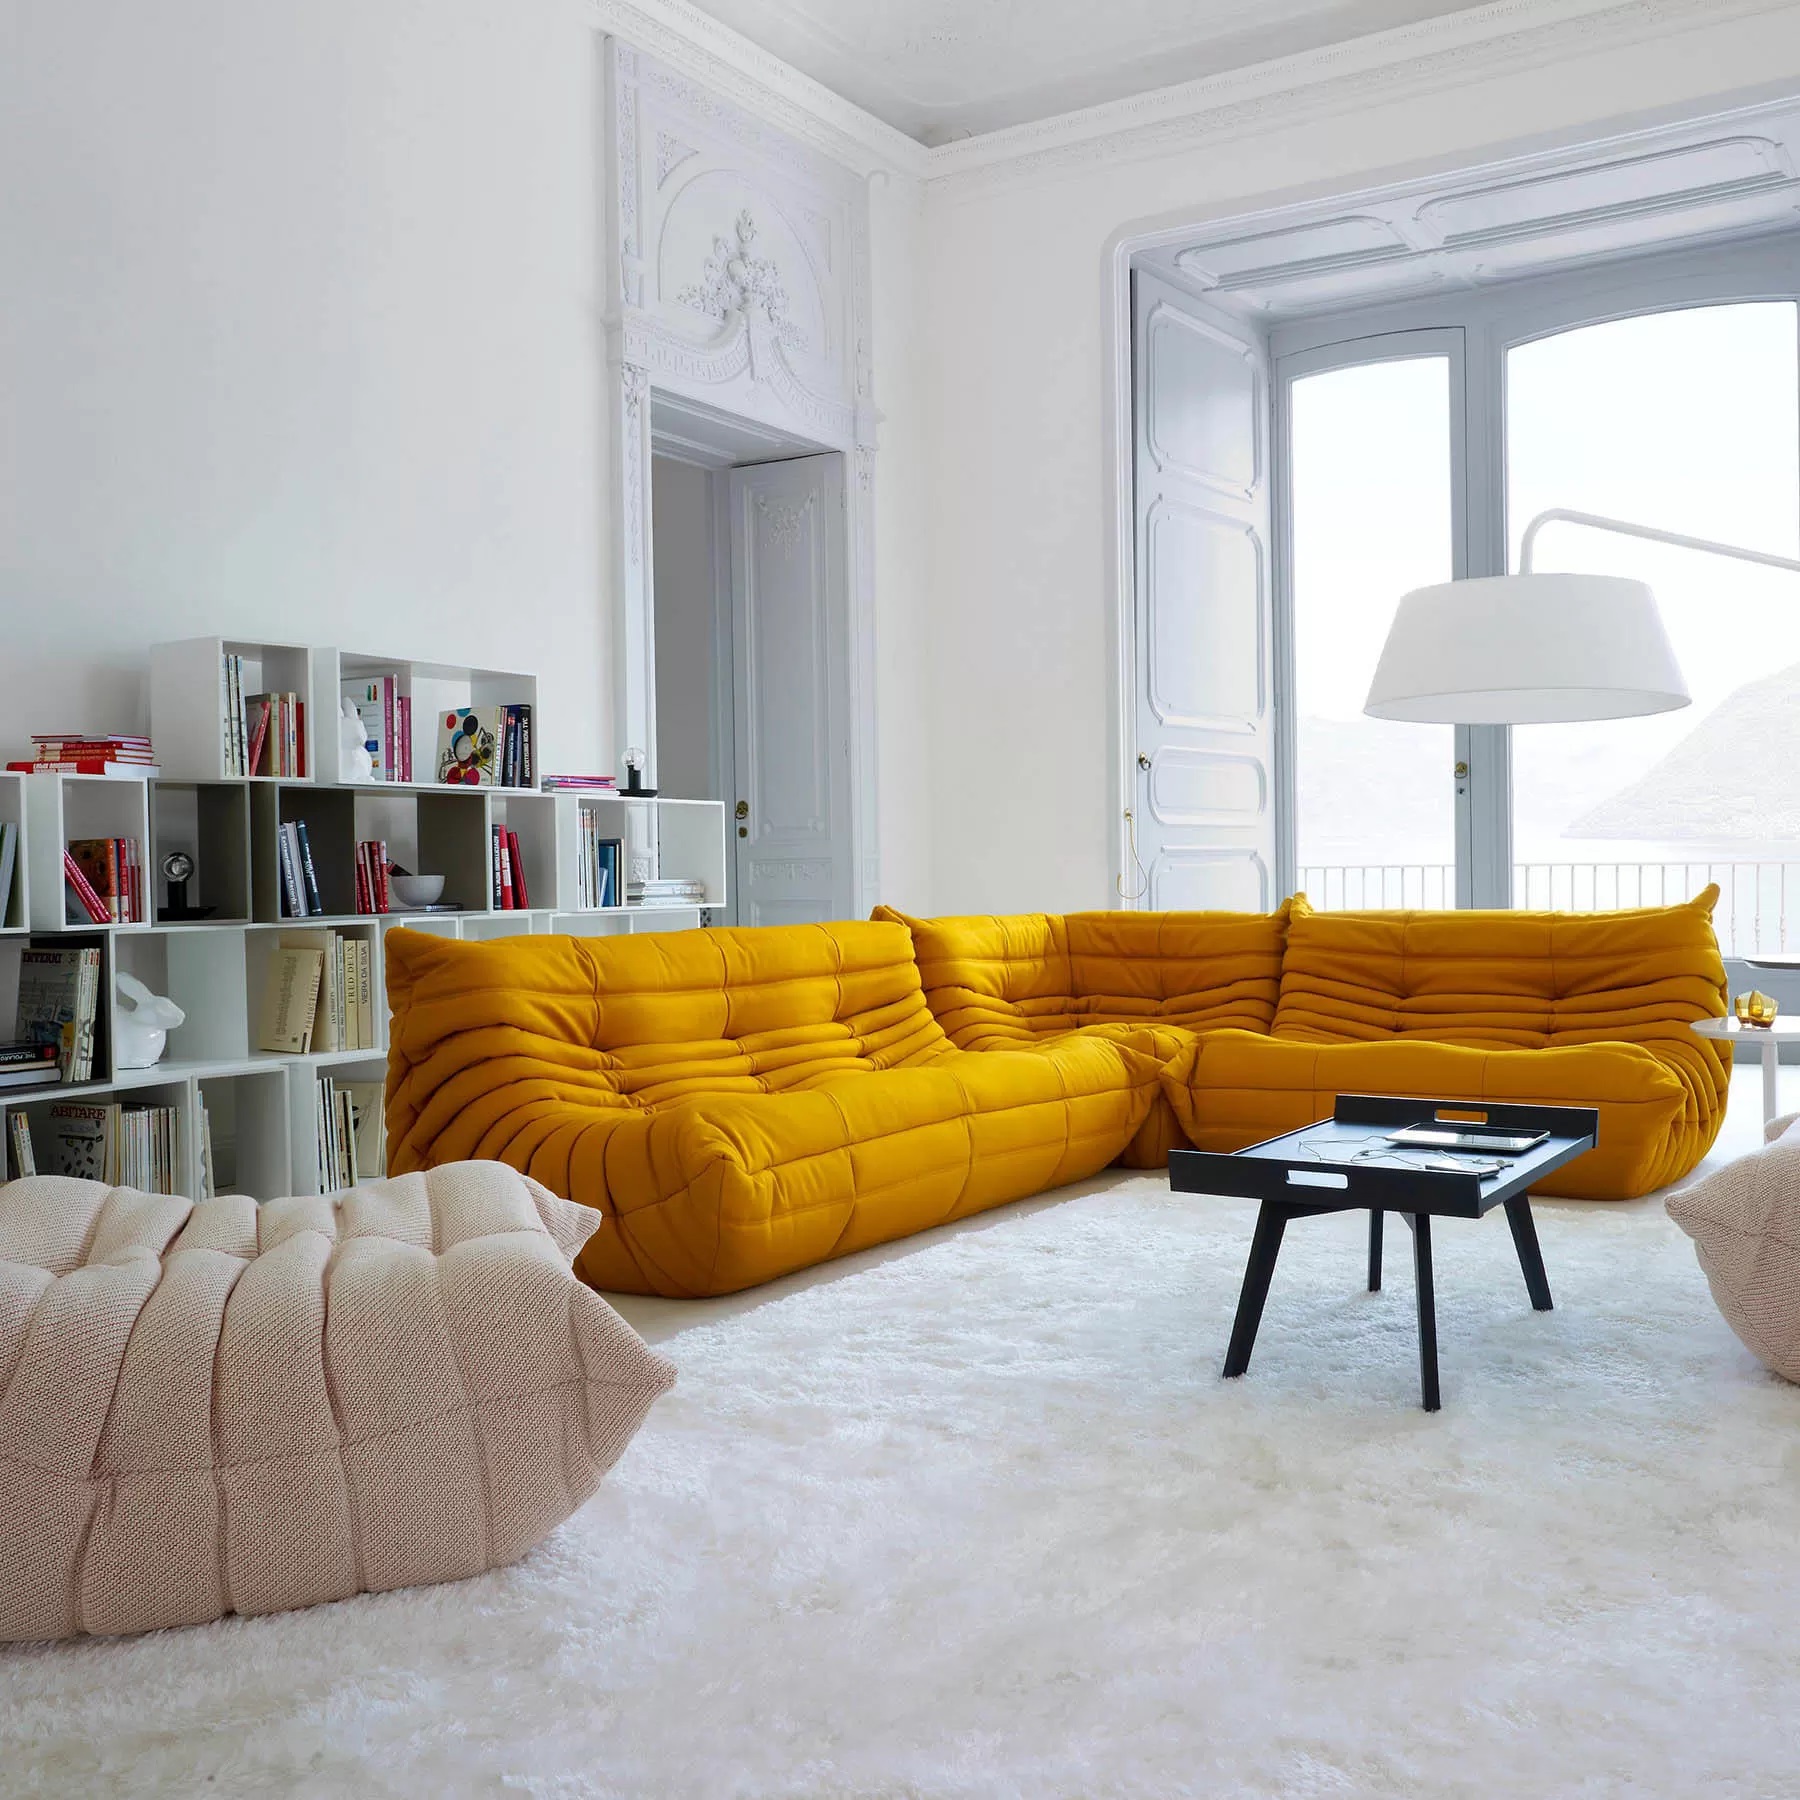 Êm ái, tiện nghi và nổi bật nhưng mẫu sofa không chân sẽ tốn nhiều diện tích hơn, phù hợp với những phòng khách nhỏ.